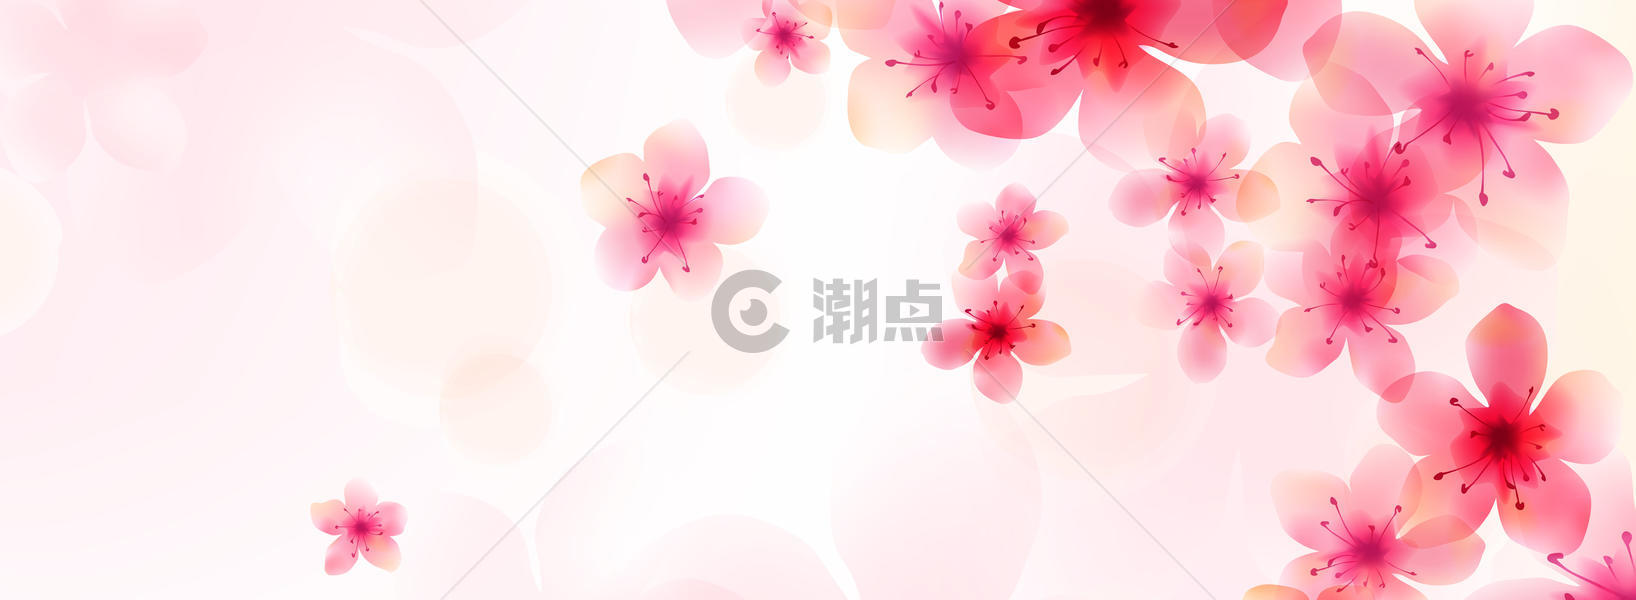 浪漫粉红色banner图片素材免费下载